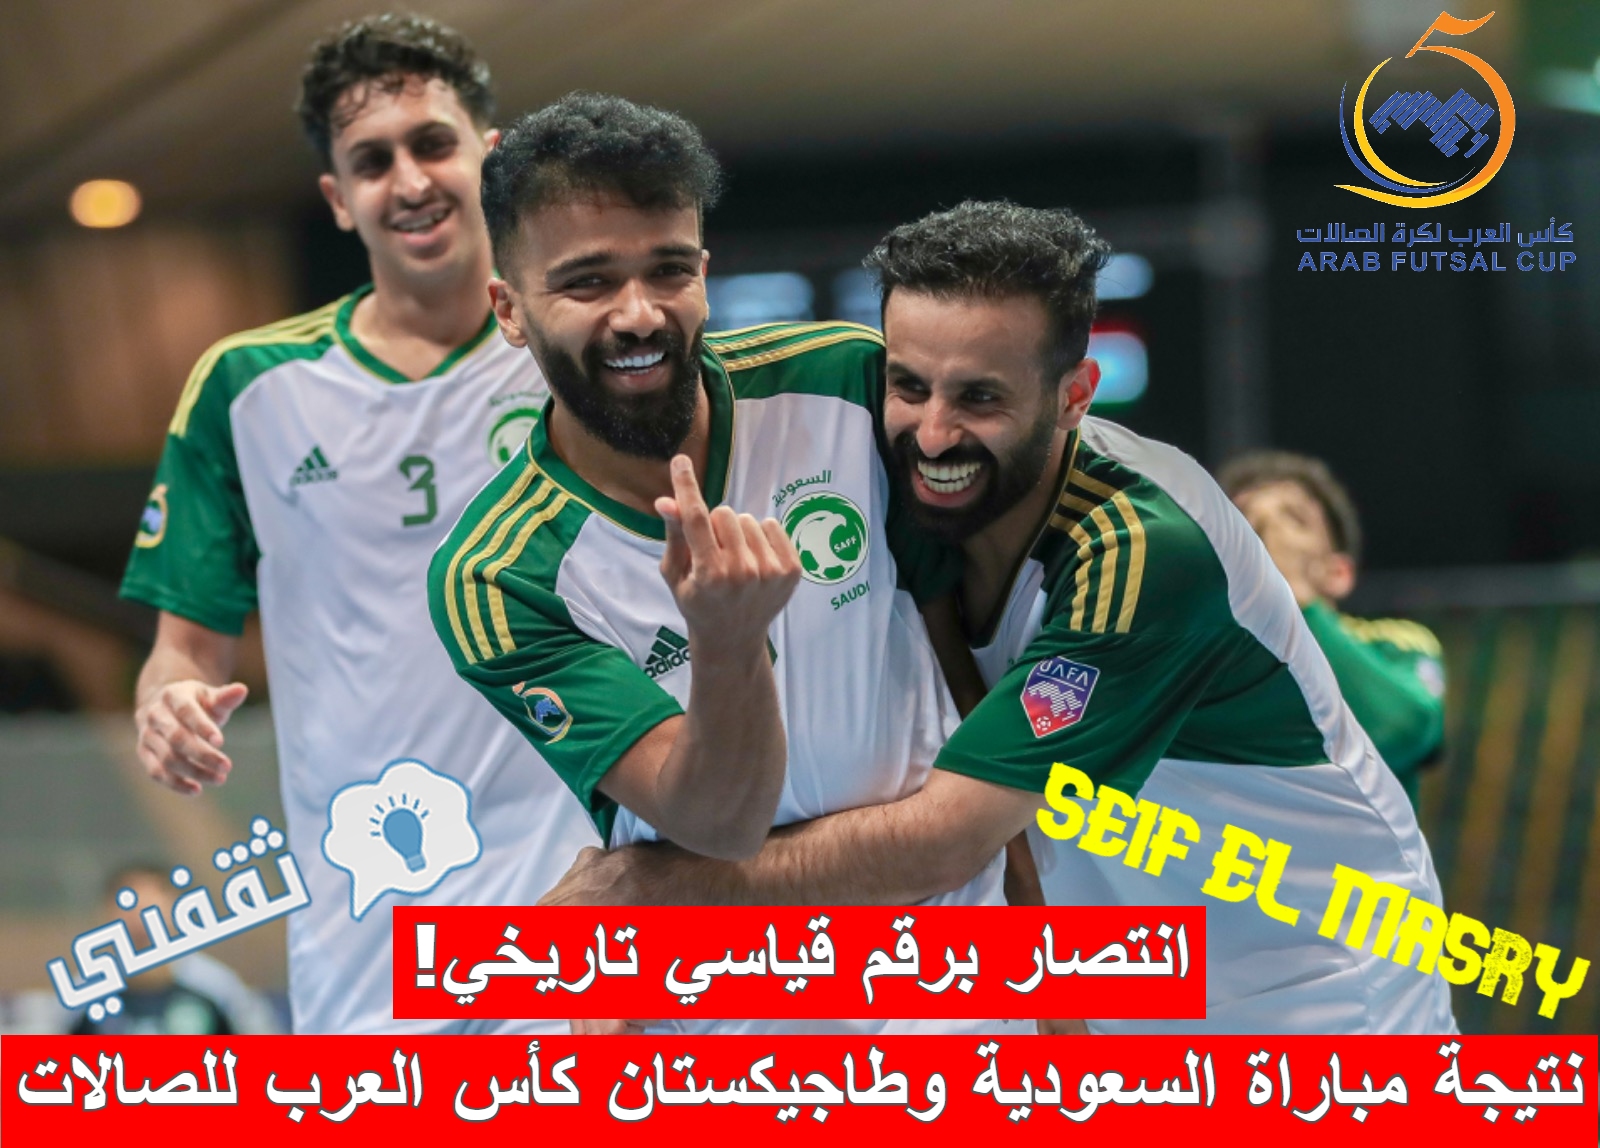 نتيجة مباراة السعودية وطاجيكستان في البطولة العربية للكرة الخامسية